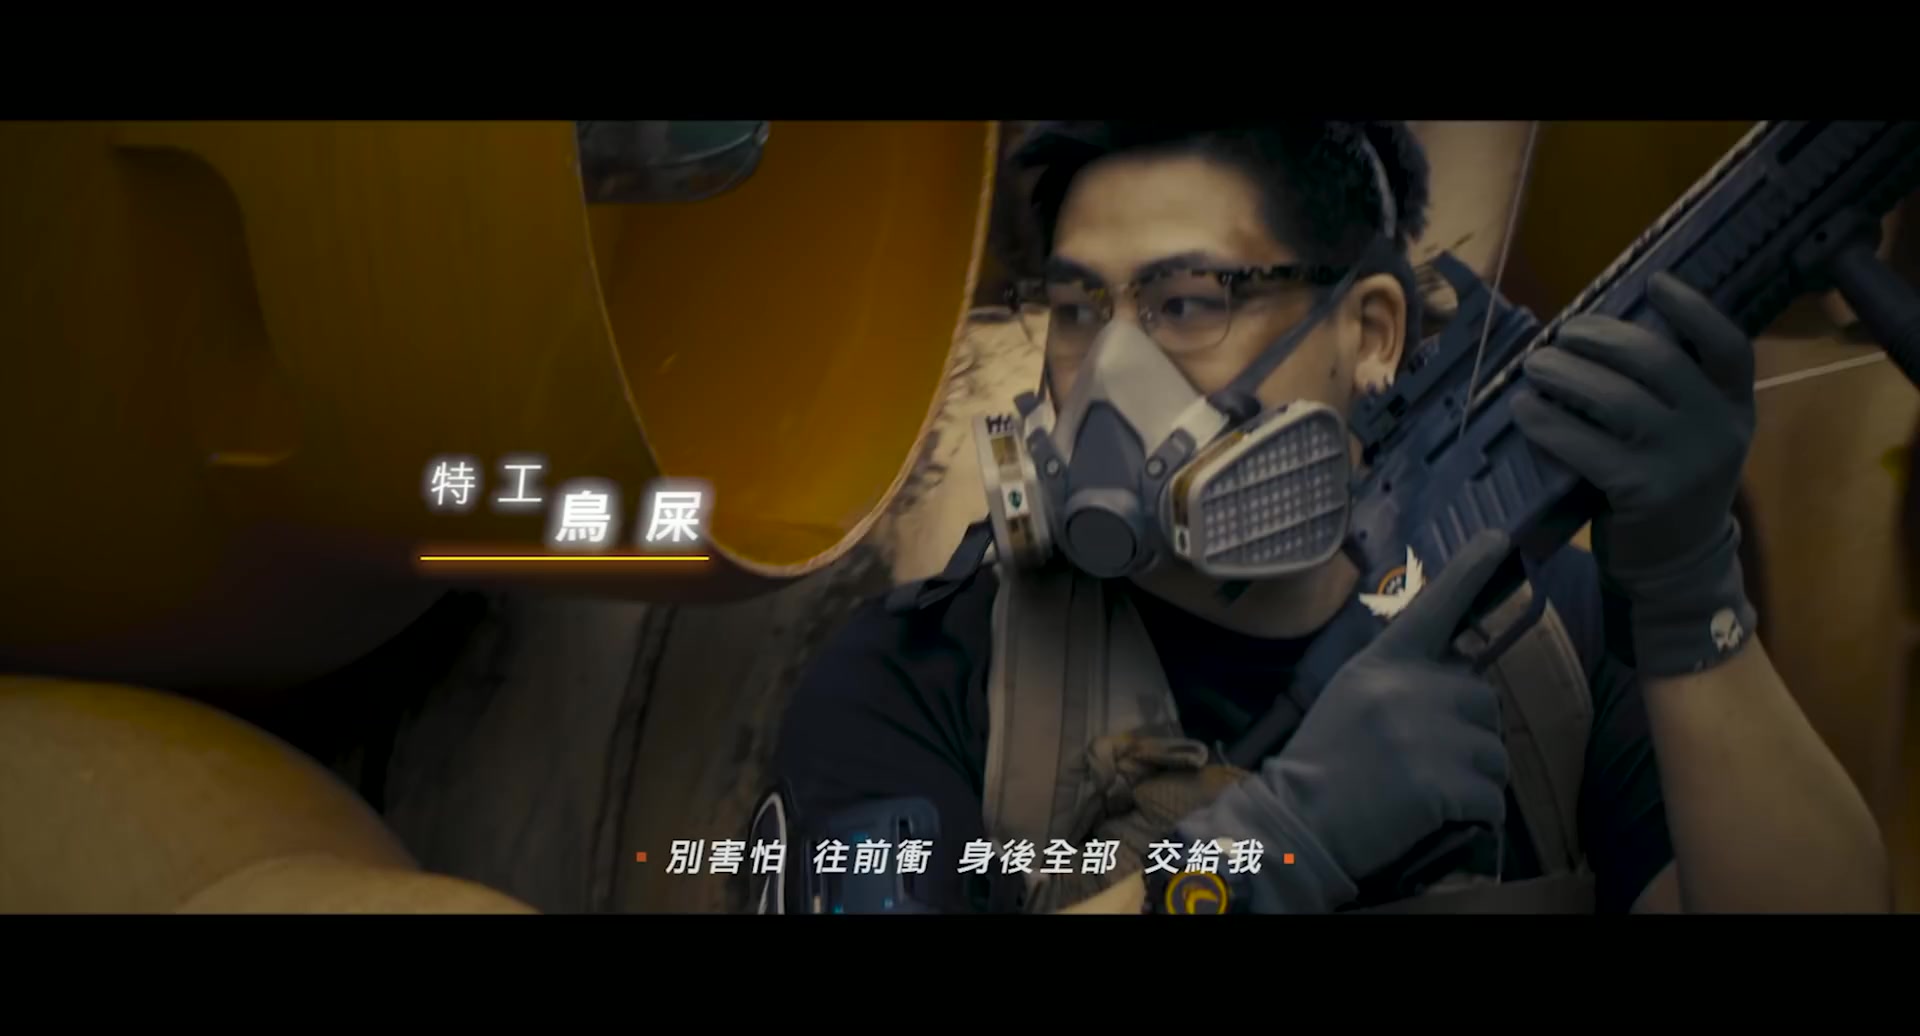 《全境封锁2》中文宣传曲公布 歌手化身特工捍卫防线